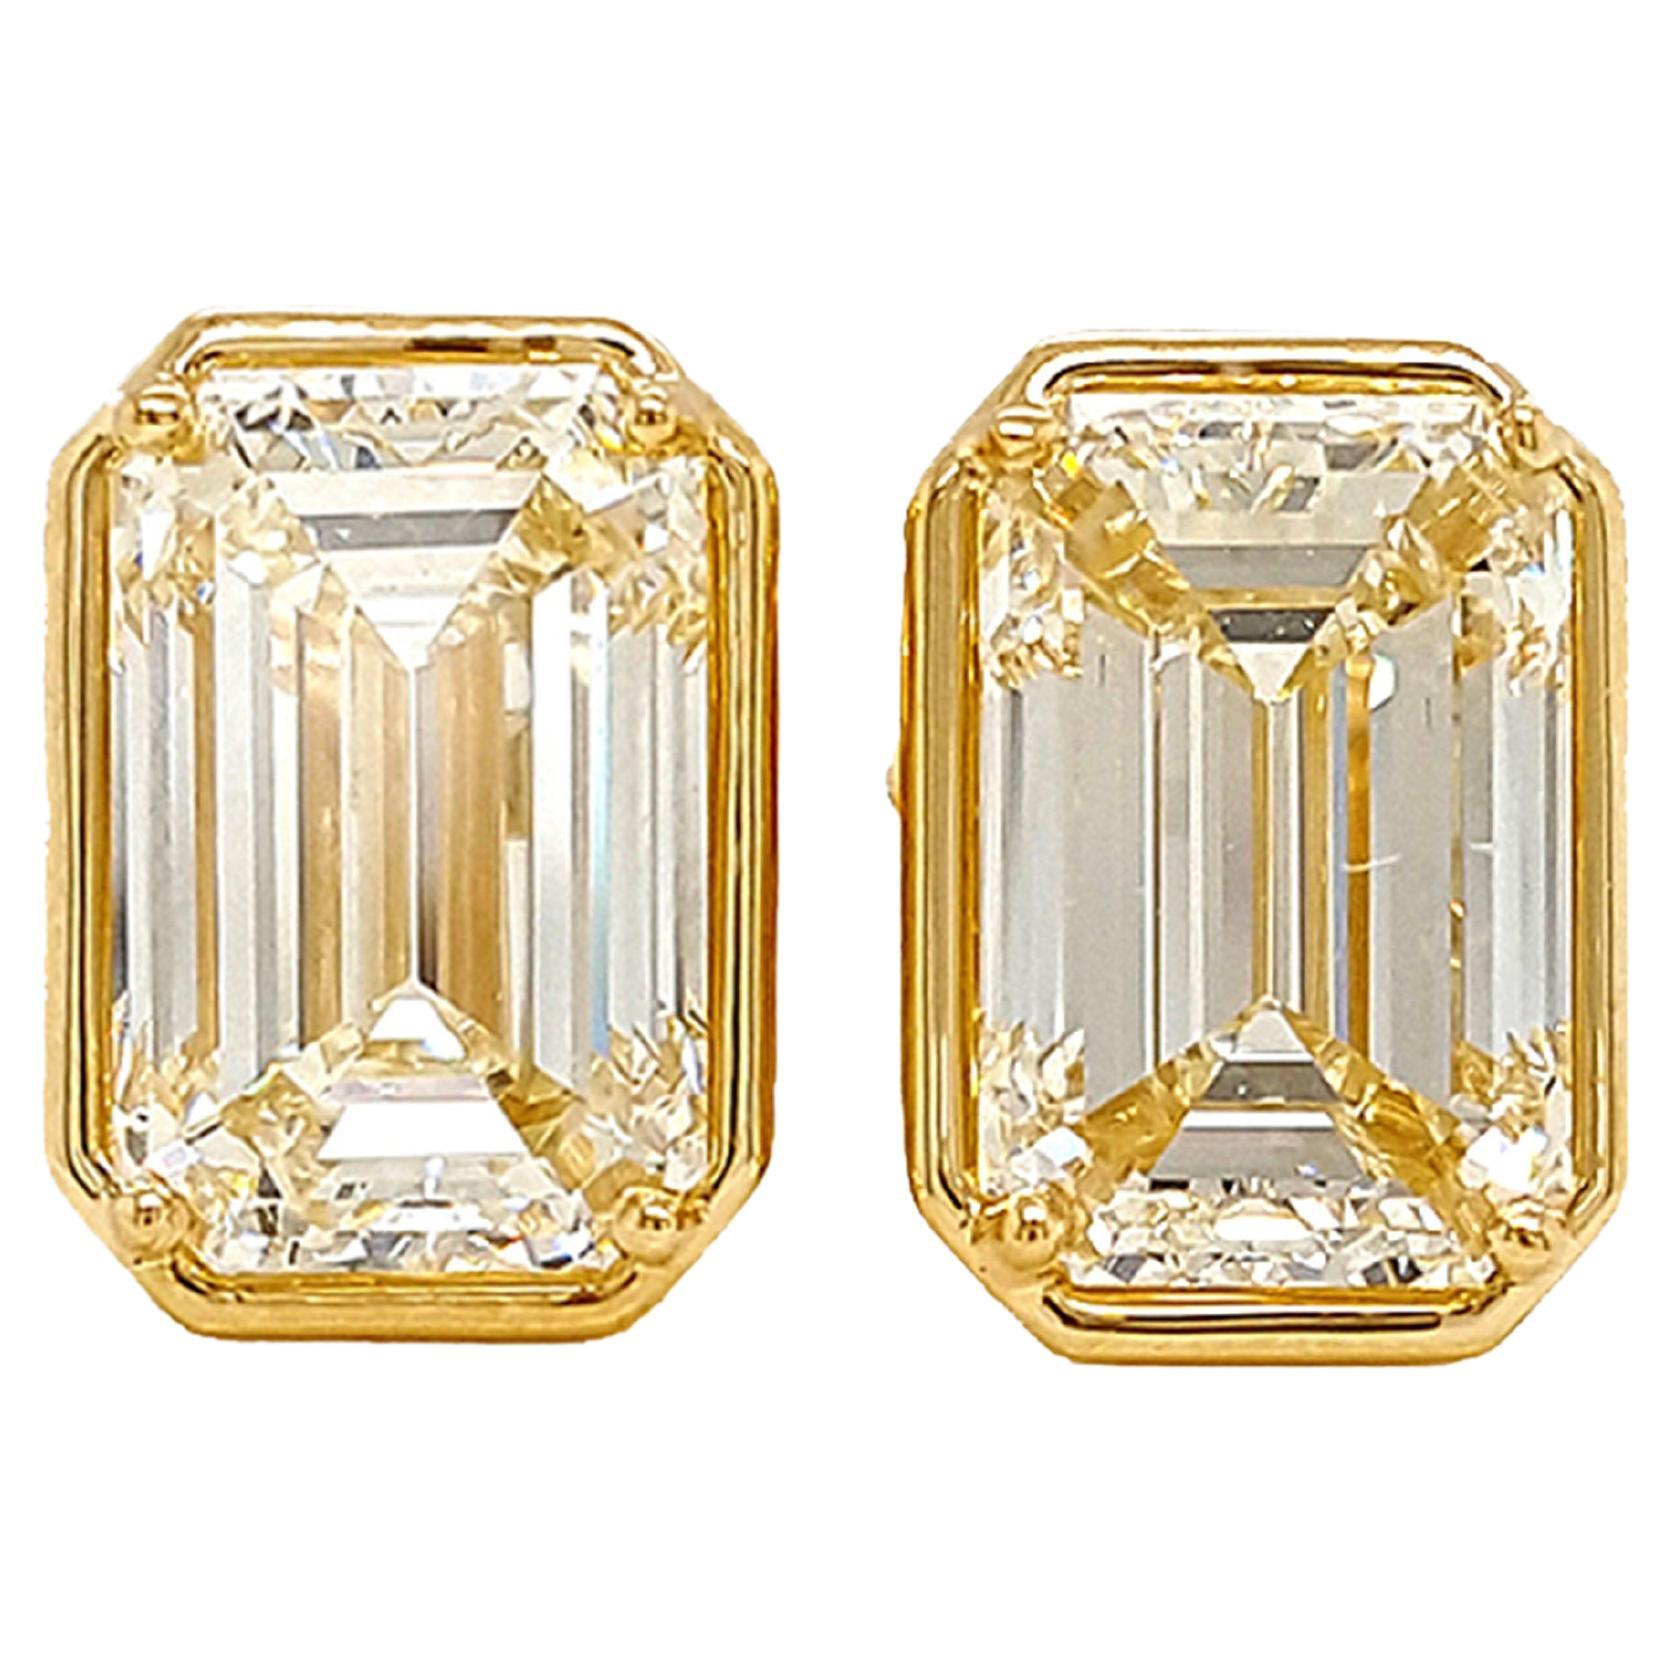 10 Carat Emerald Cut Diamond Stud Earrings Set in 18k Gold Bezel, GIA Certified For Sale